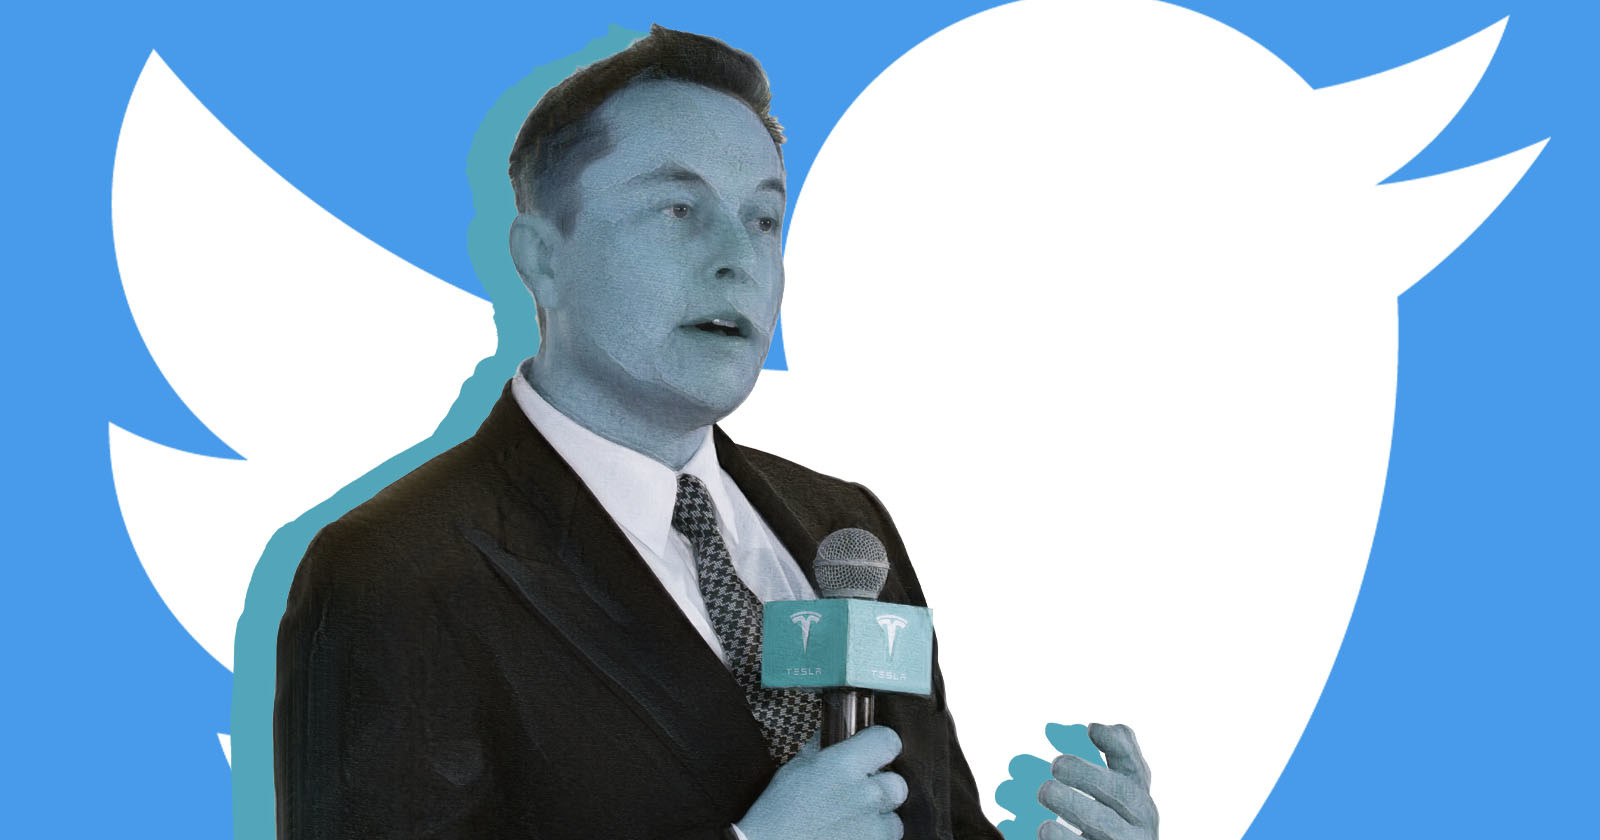 Elon Musk Buys Twitter for $44 Billion